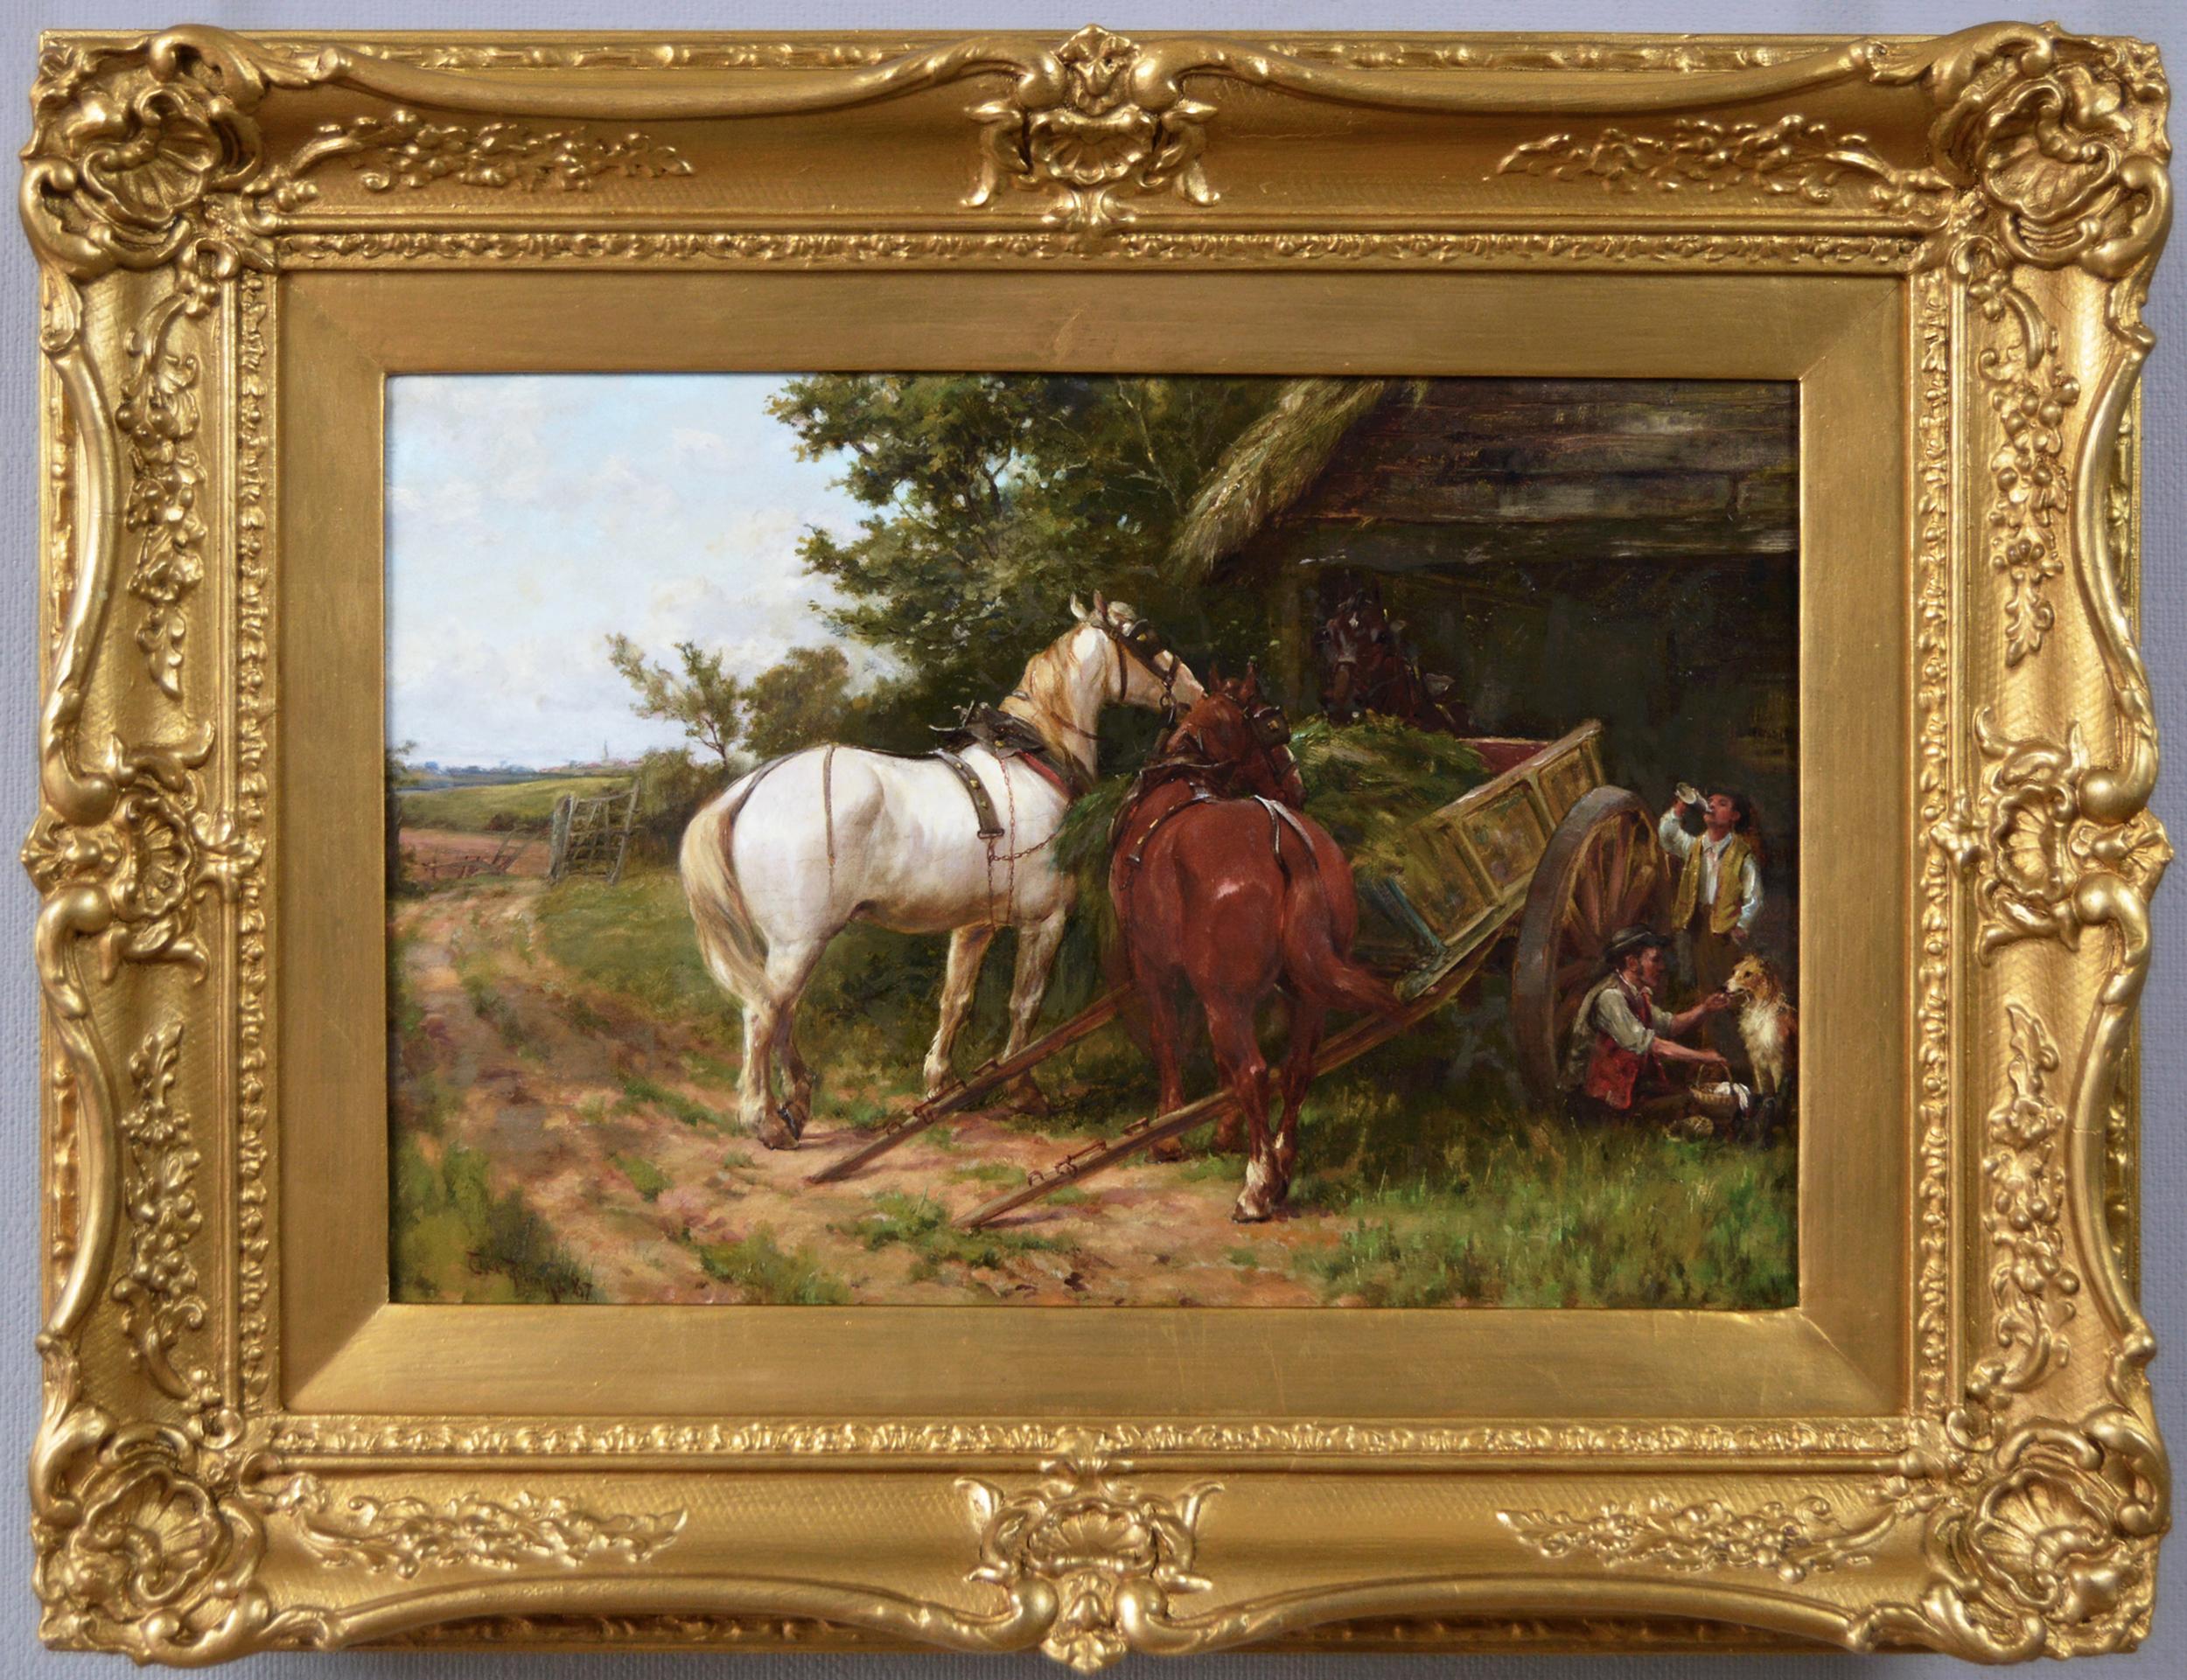 Landscape Painting Thomas Blinks - Peinture à l'huile du XIXe siècle représentant des chevaux près d'une grange, avec des personnages et un chien